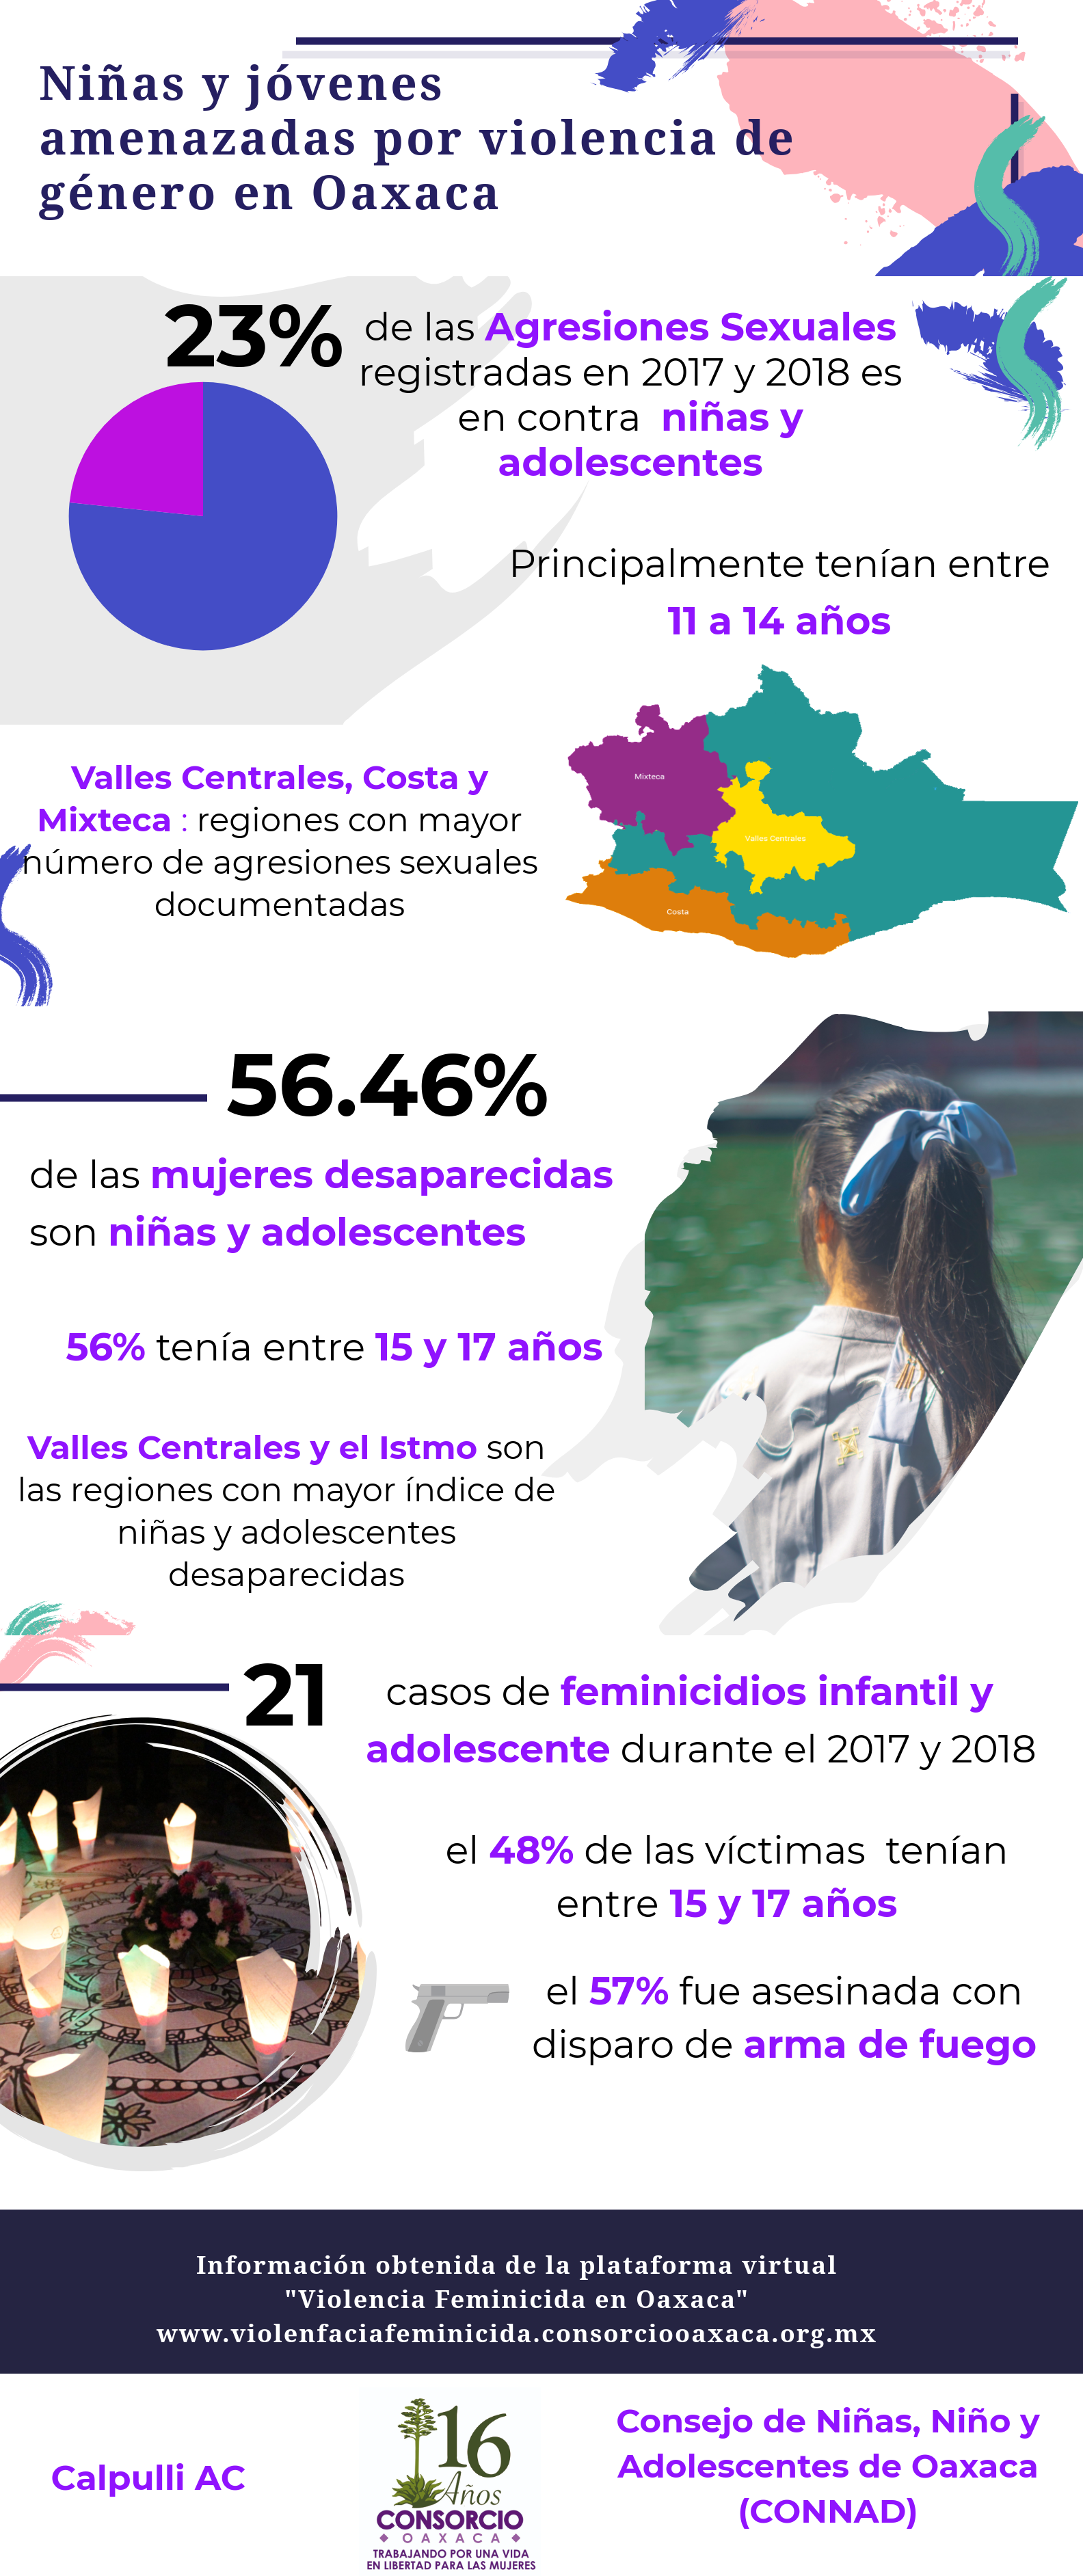 Niñas y adolescentes amenazadas por violencia de género en Oaxaca